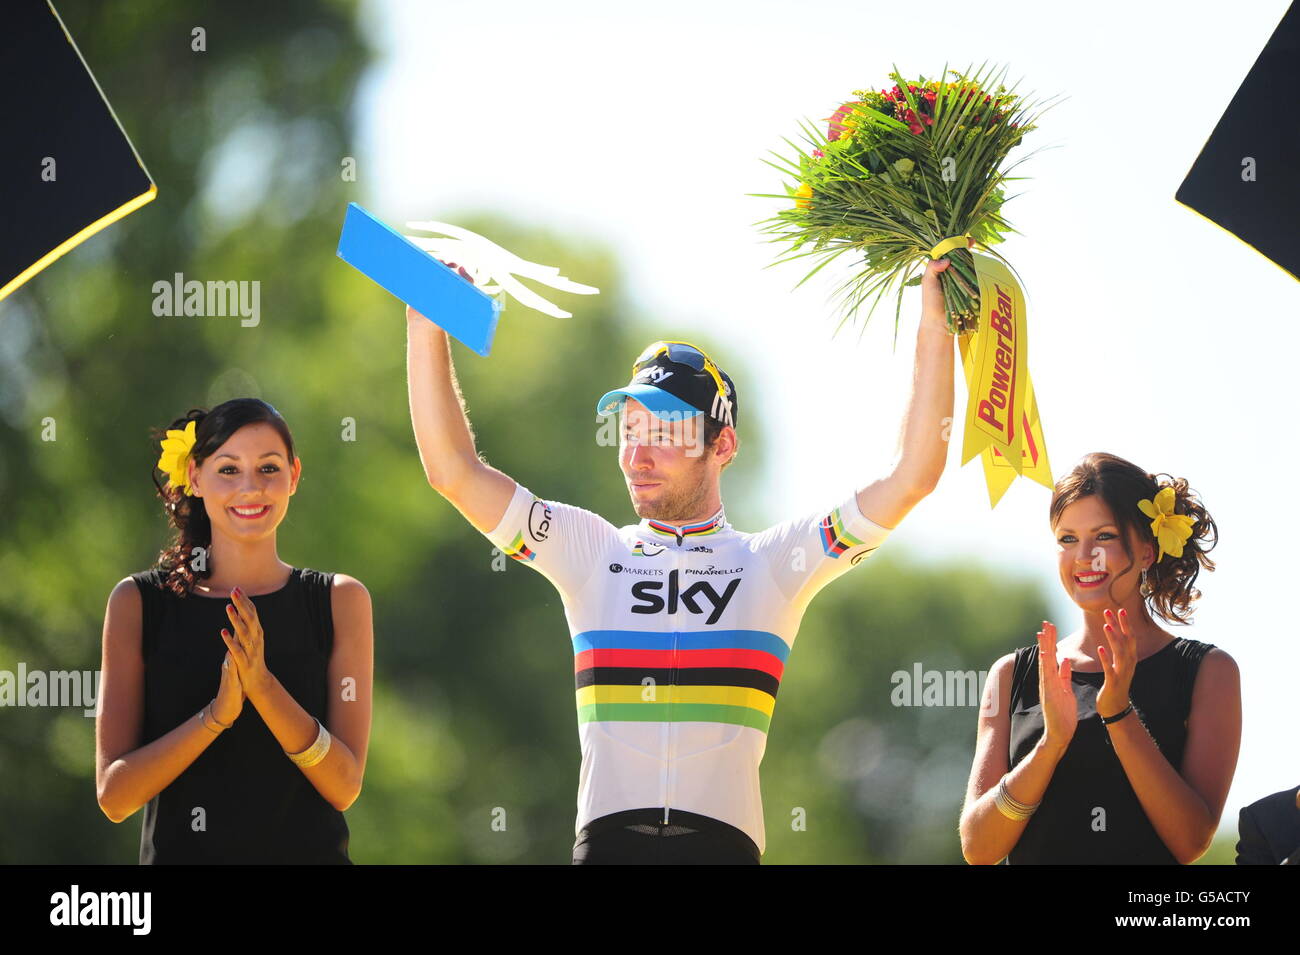 Der britische Mark Cavendish von Sky Pro Racing feiert auf dem Siegerpodest nach dem Gewinn der letzten Etappe der Tour de France 2012 in Paris. Stockfoto